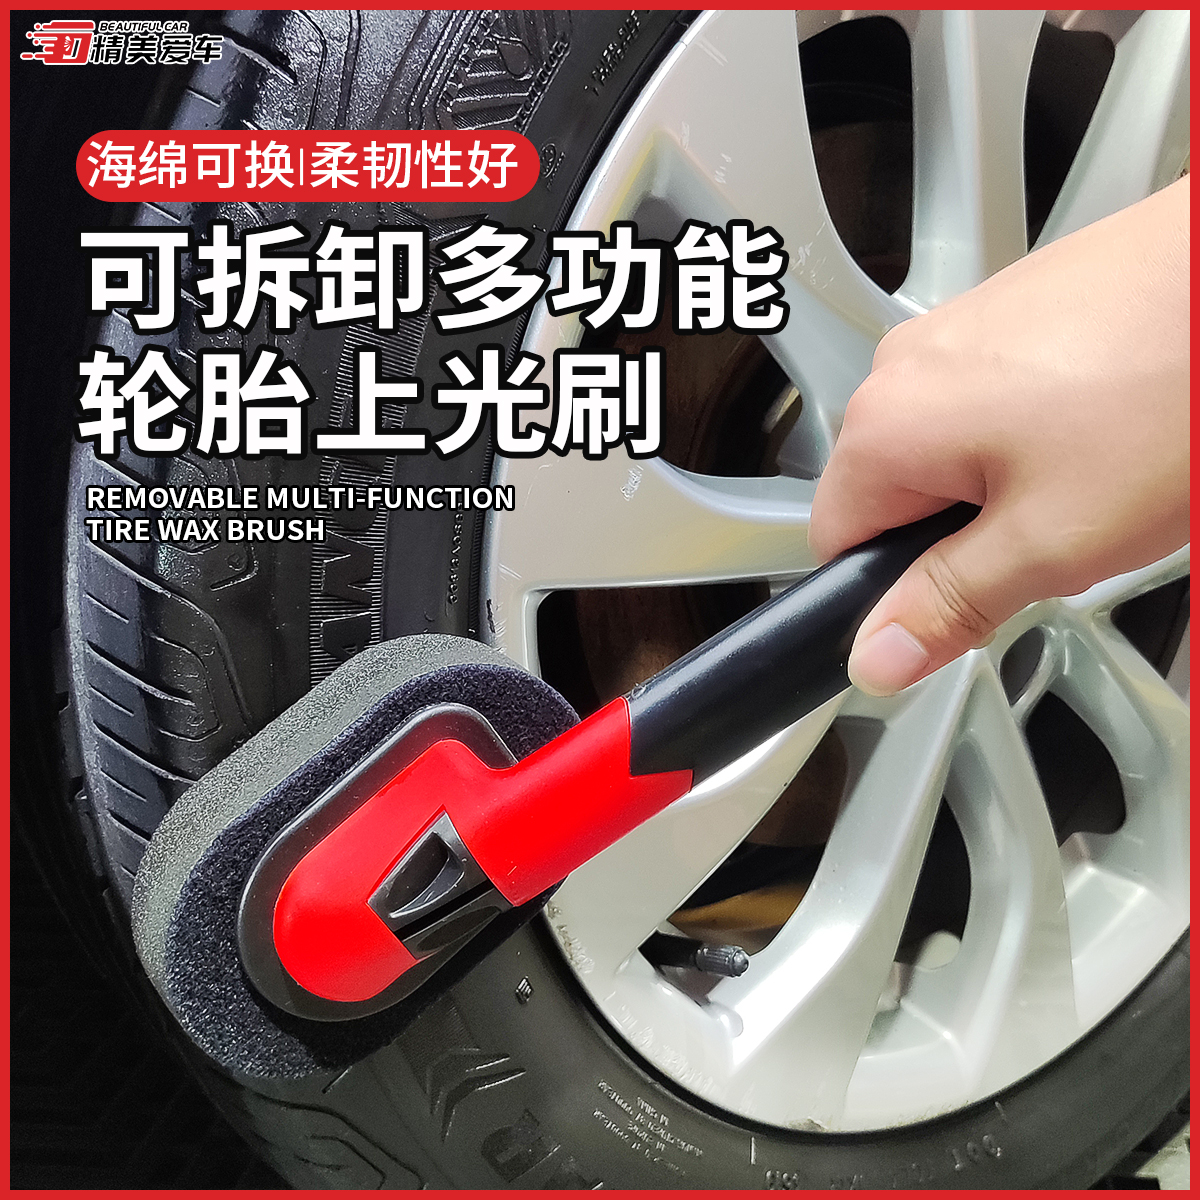 可拆卸进口轮胎上光刷台湾美容轮胎上蜡刷可替换轮胎打蜡海绵刷